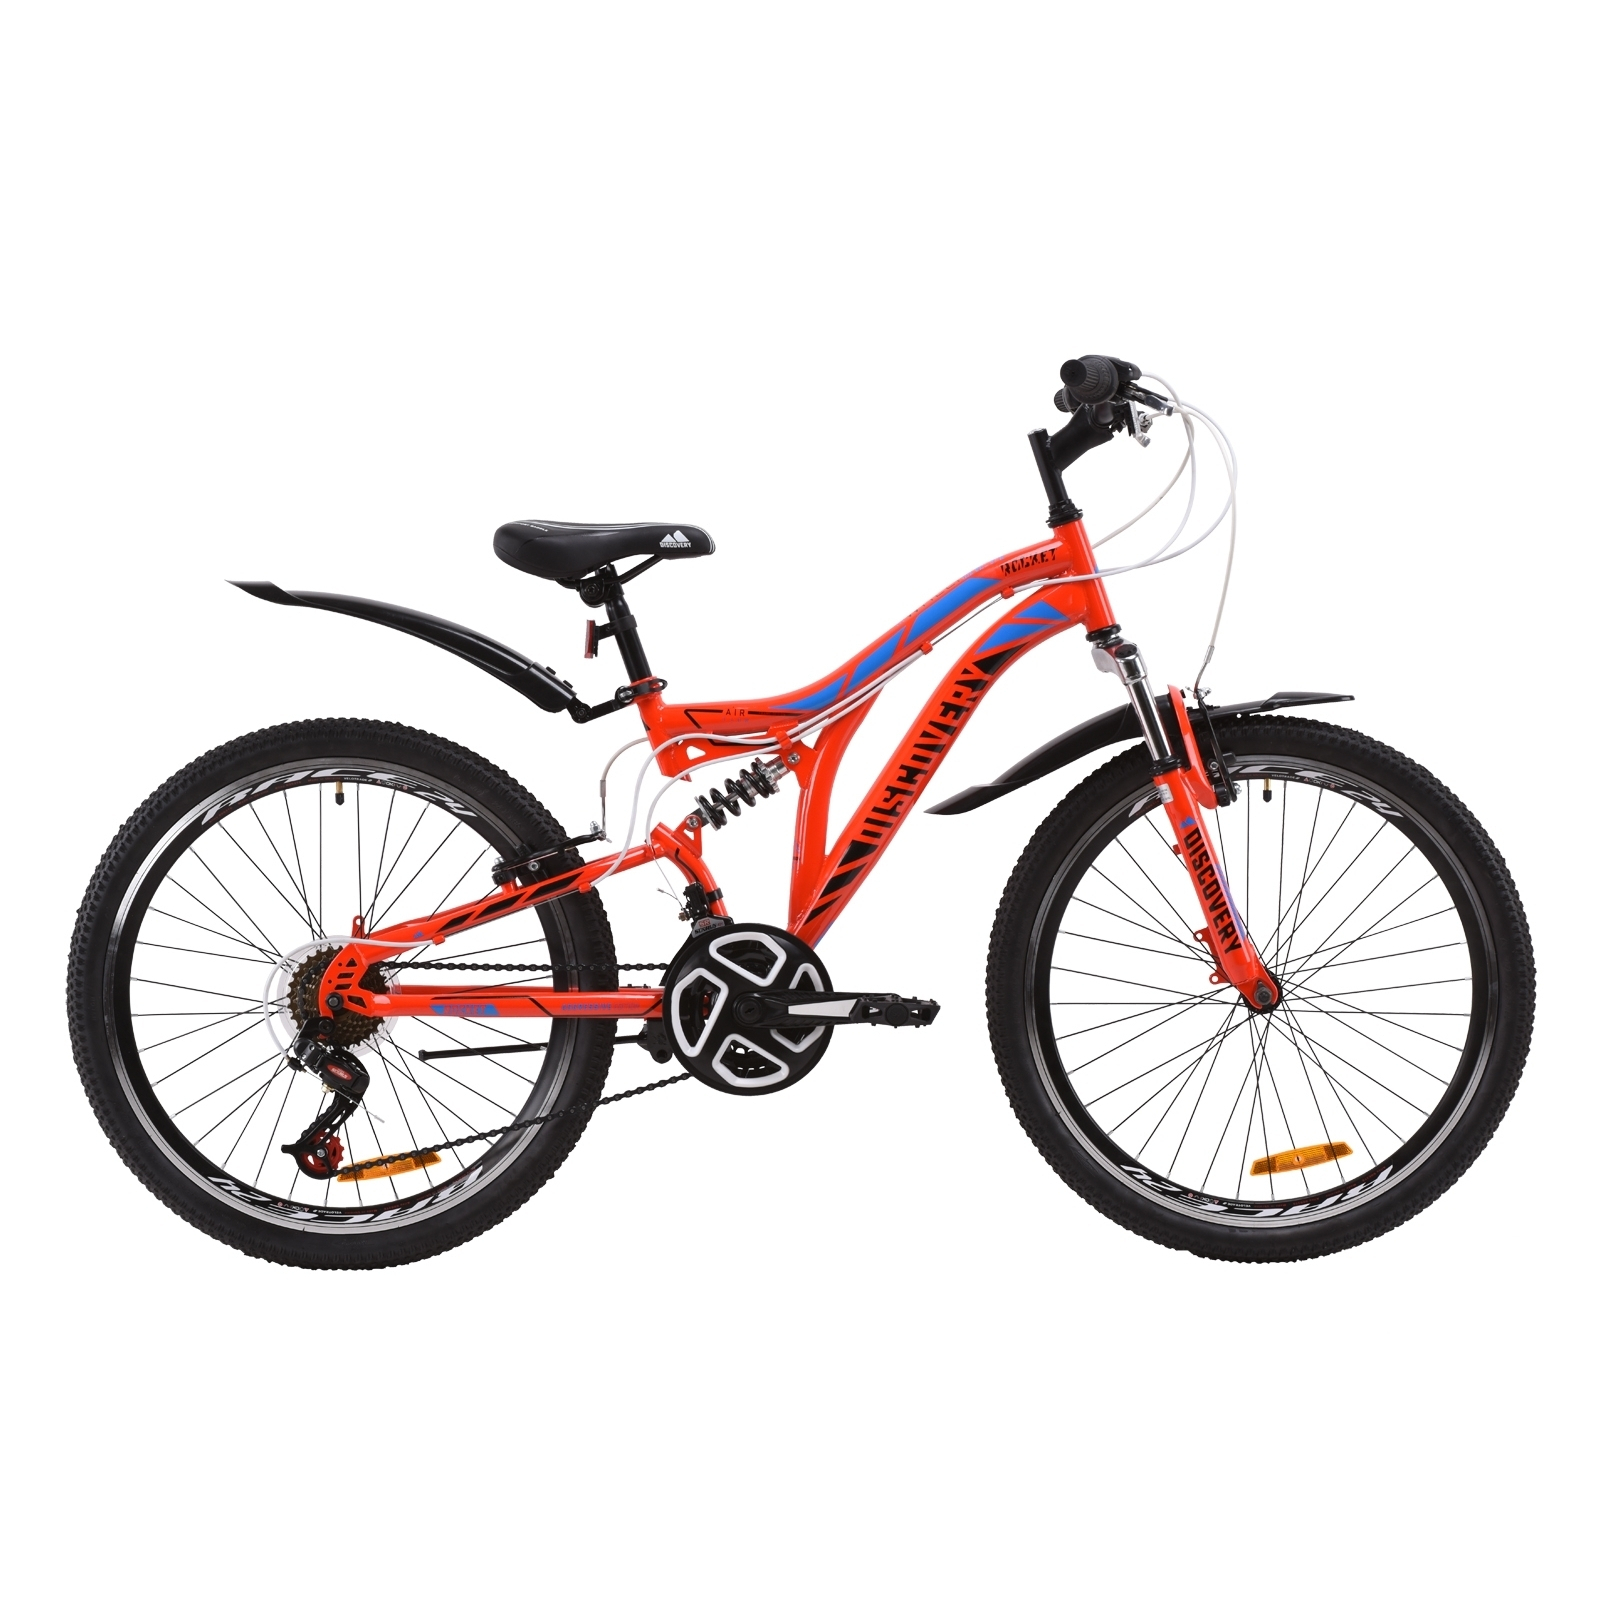 Велосипед Discovery 24" ROCKET AM2 Vbr рама-15" St 2020 красно-черный с синим (OPS-DIS-24-188)